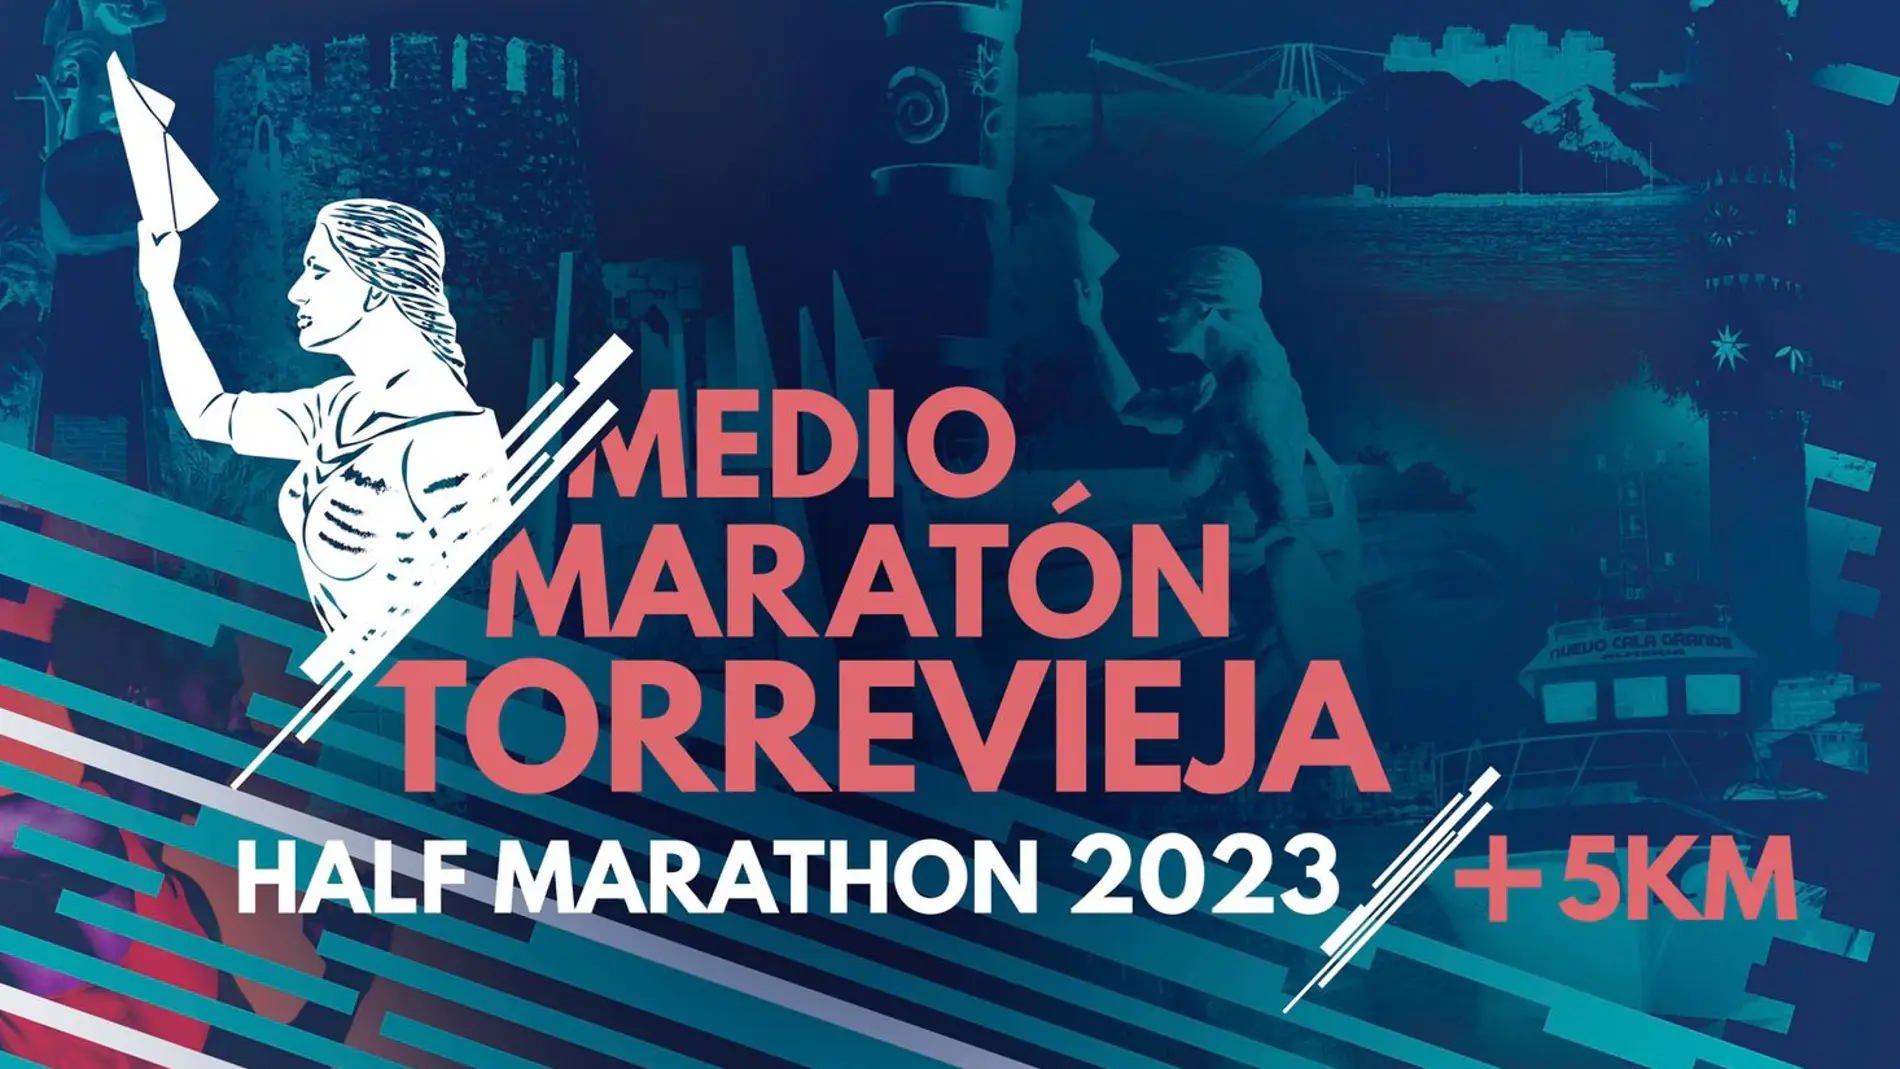 Presentación en Torrevieja de la media maratón a celebrar el próximo 26 de febrero de 2023 